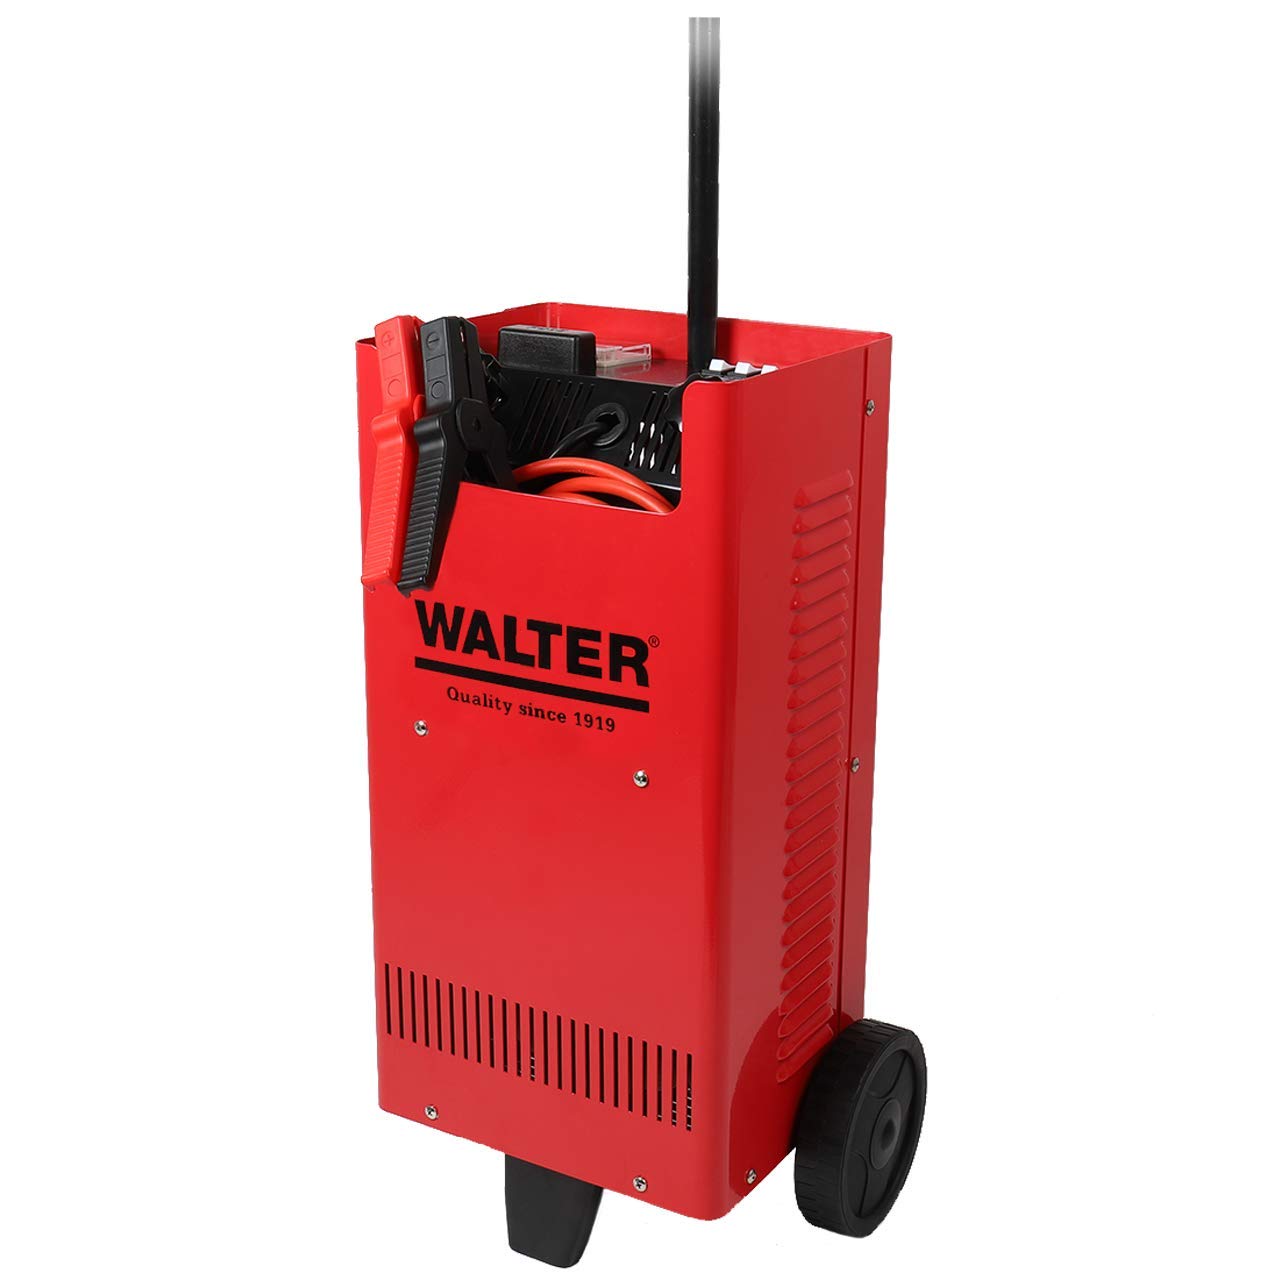 WALTER KFZ-Batterieladegerät mit Starthilfe 12 V/24 V, umschaltbar, kraftvoll, Vier Ladestromeinstellungen, Schnellladung durch Ladeschub, Nennleistung von 750 W, zuverlässige Ladung und Starthilfe von WALTER